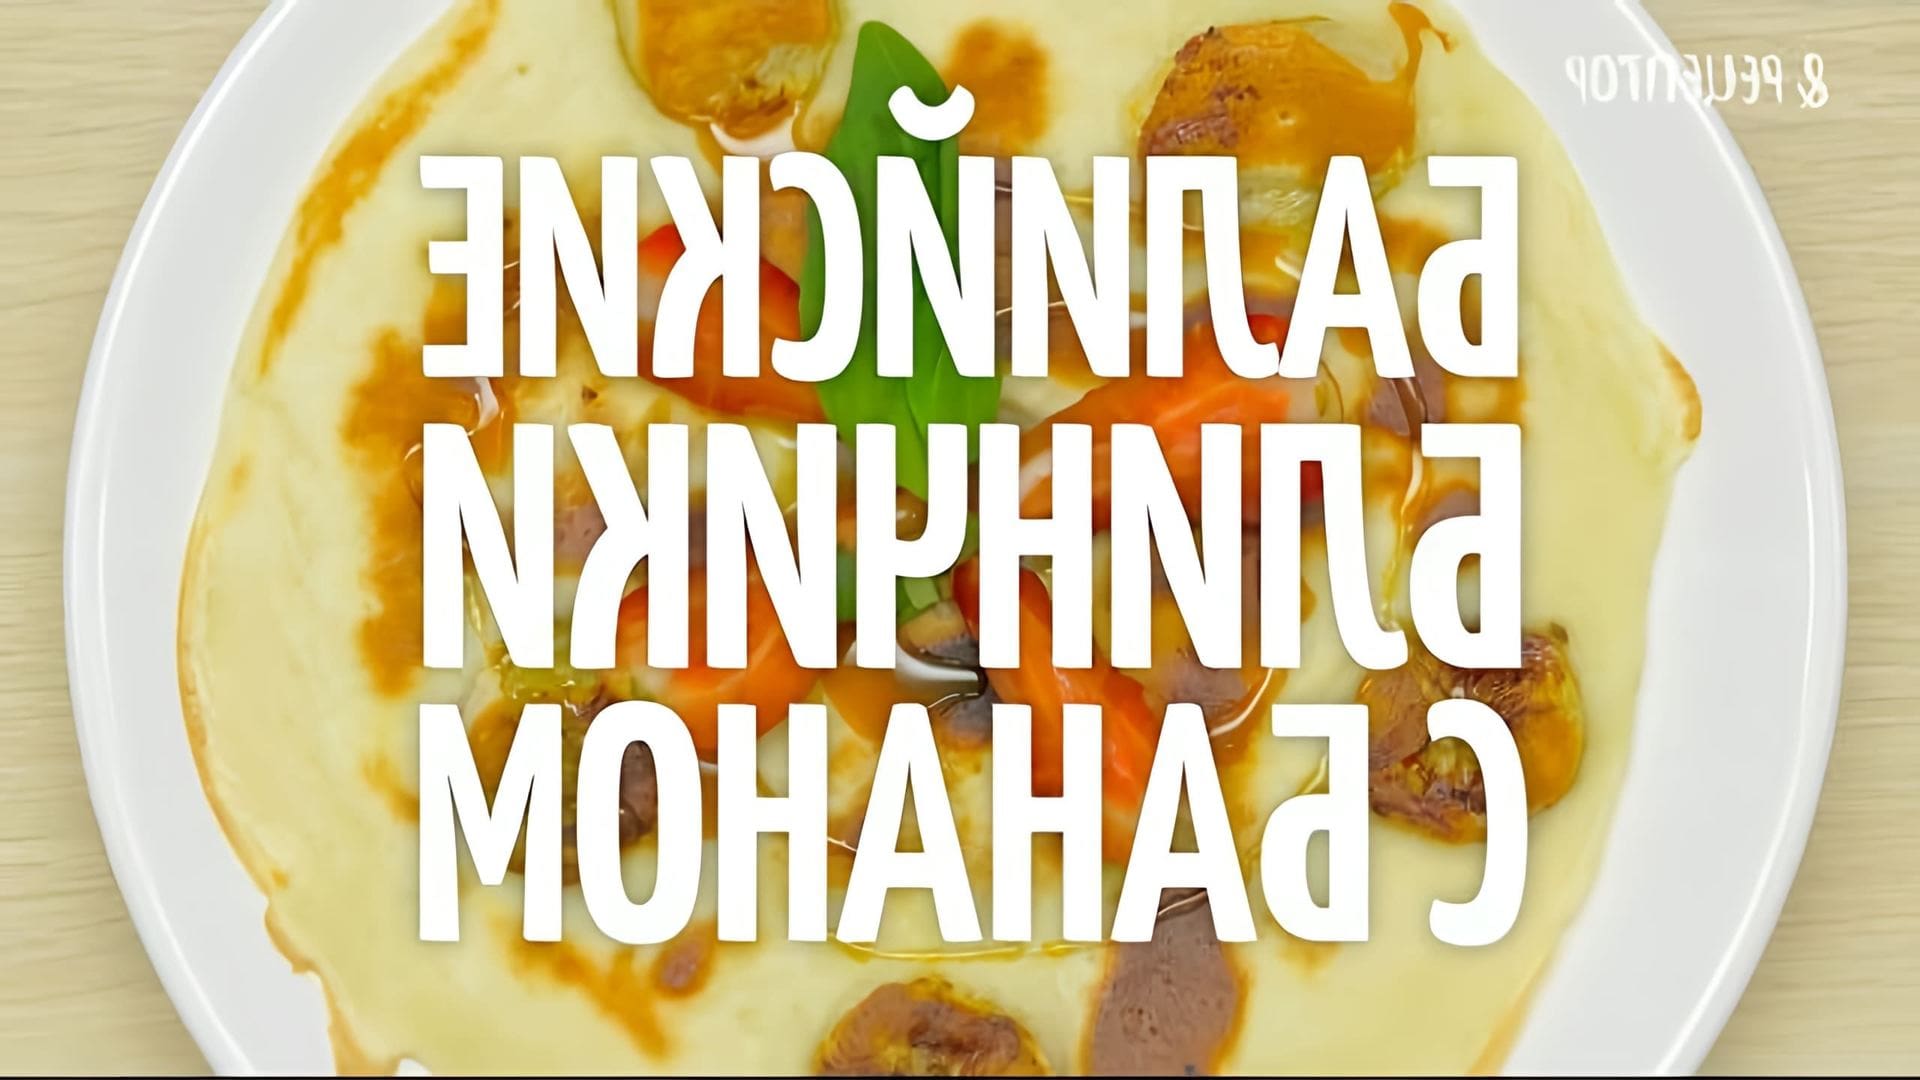 Видео-ролик под названием "Балийские блинчики с бананом" от Рецептор представляет собой рецепт приготовления традиционного балийского блюда